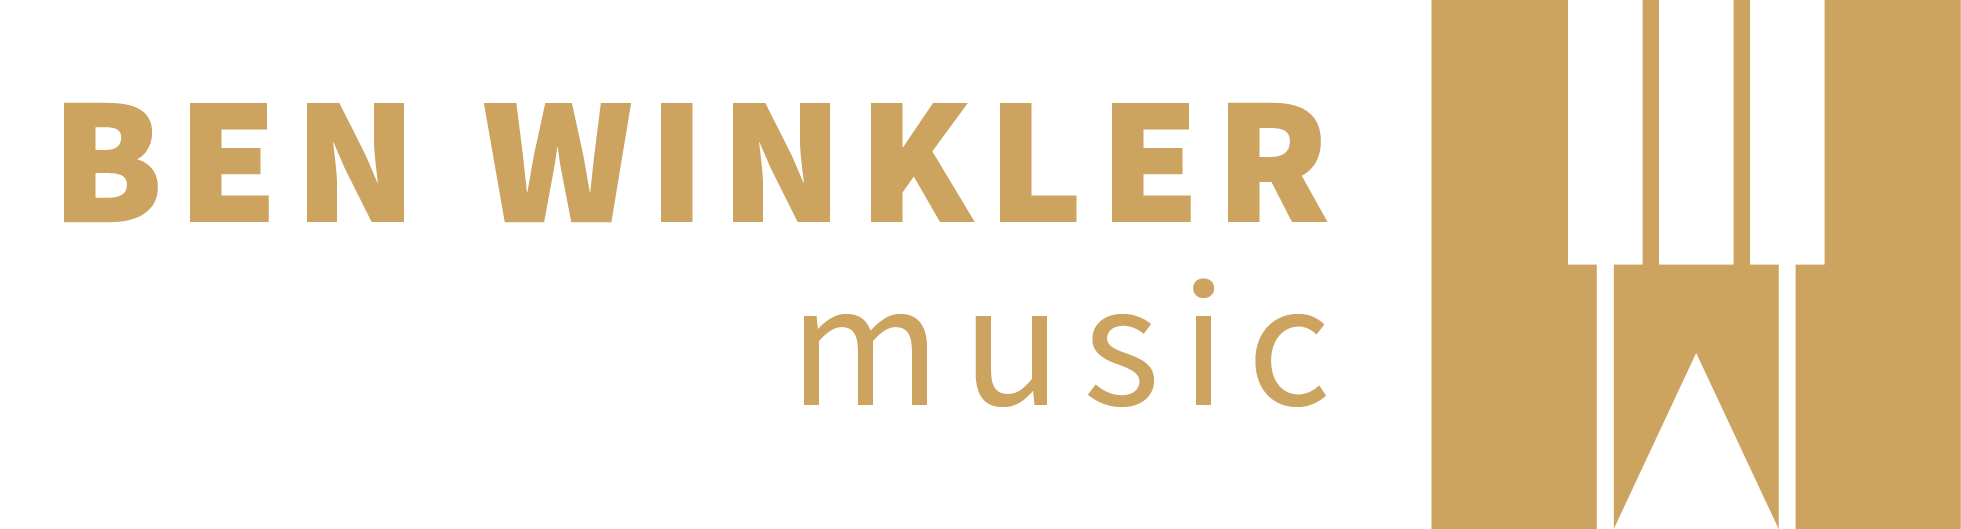 BEN WINKLER music